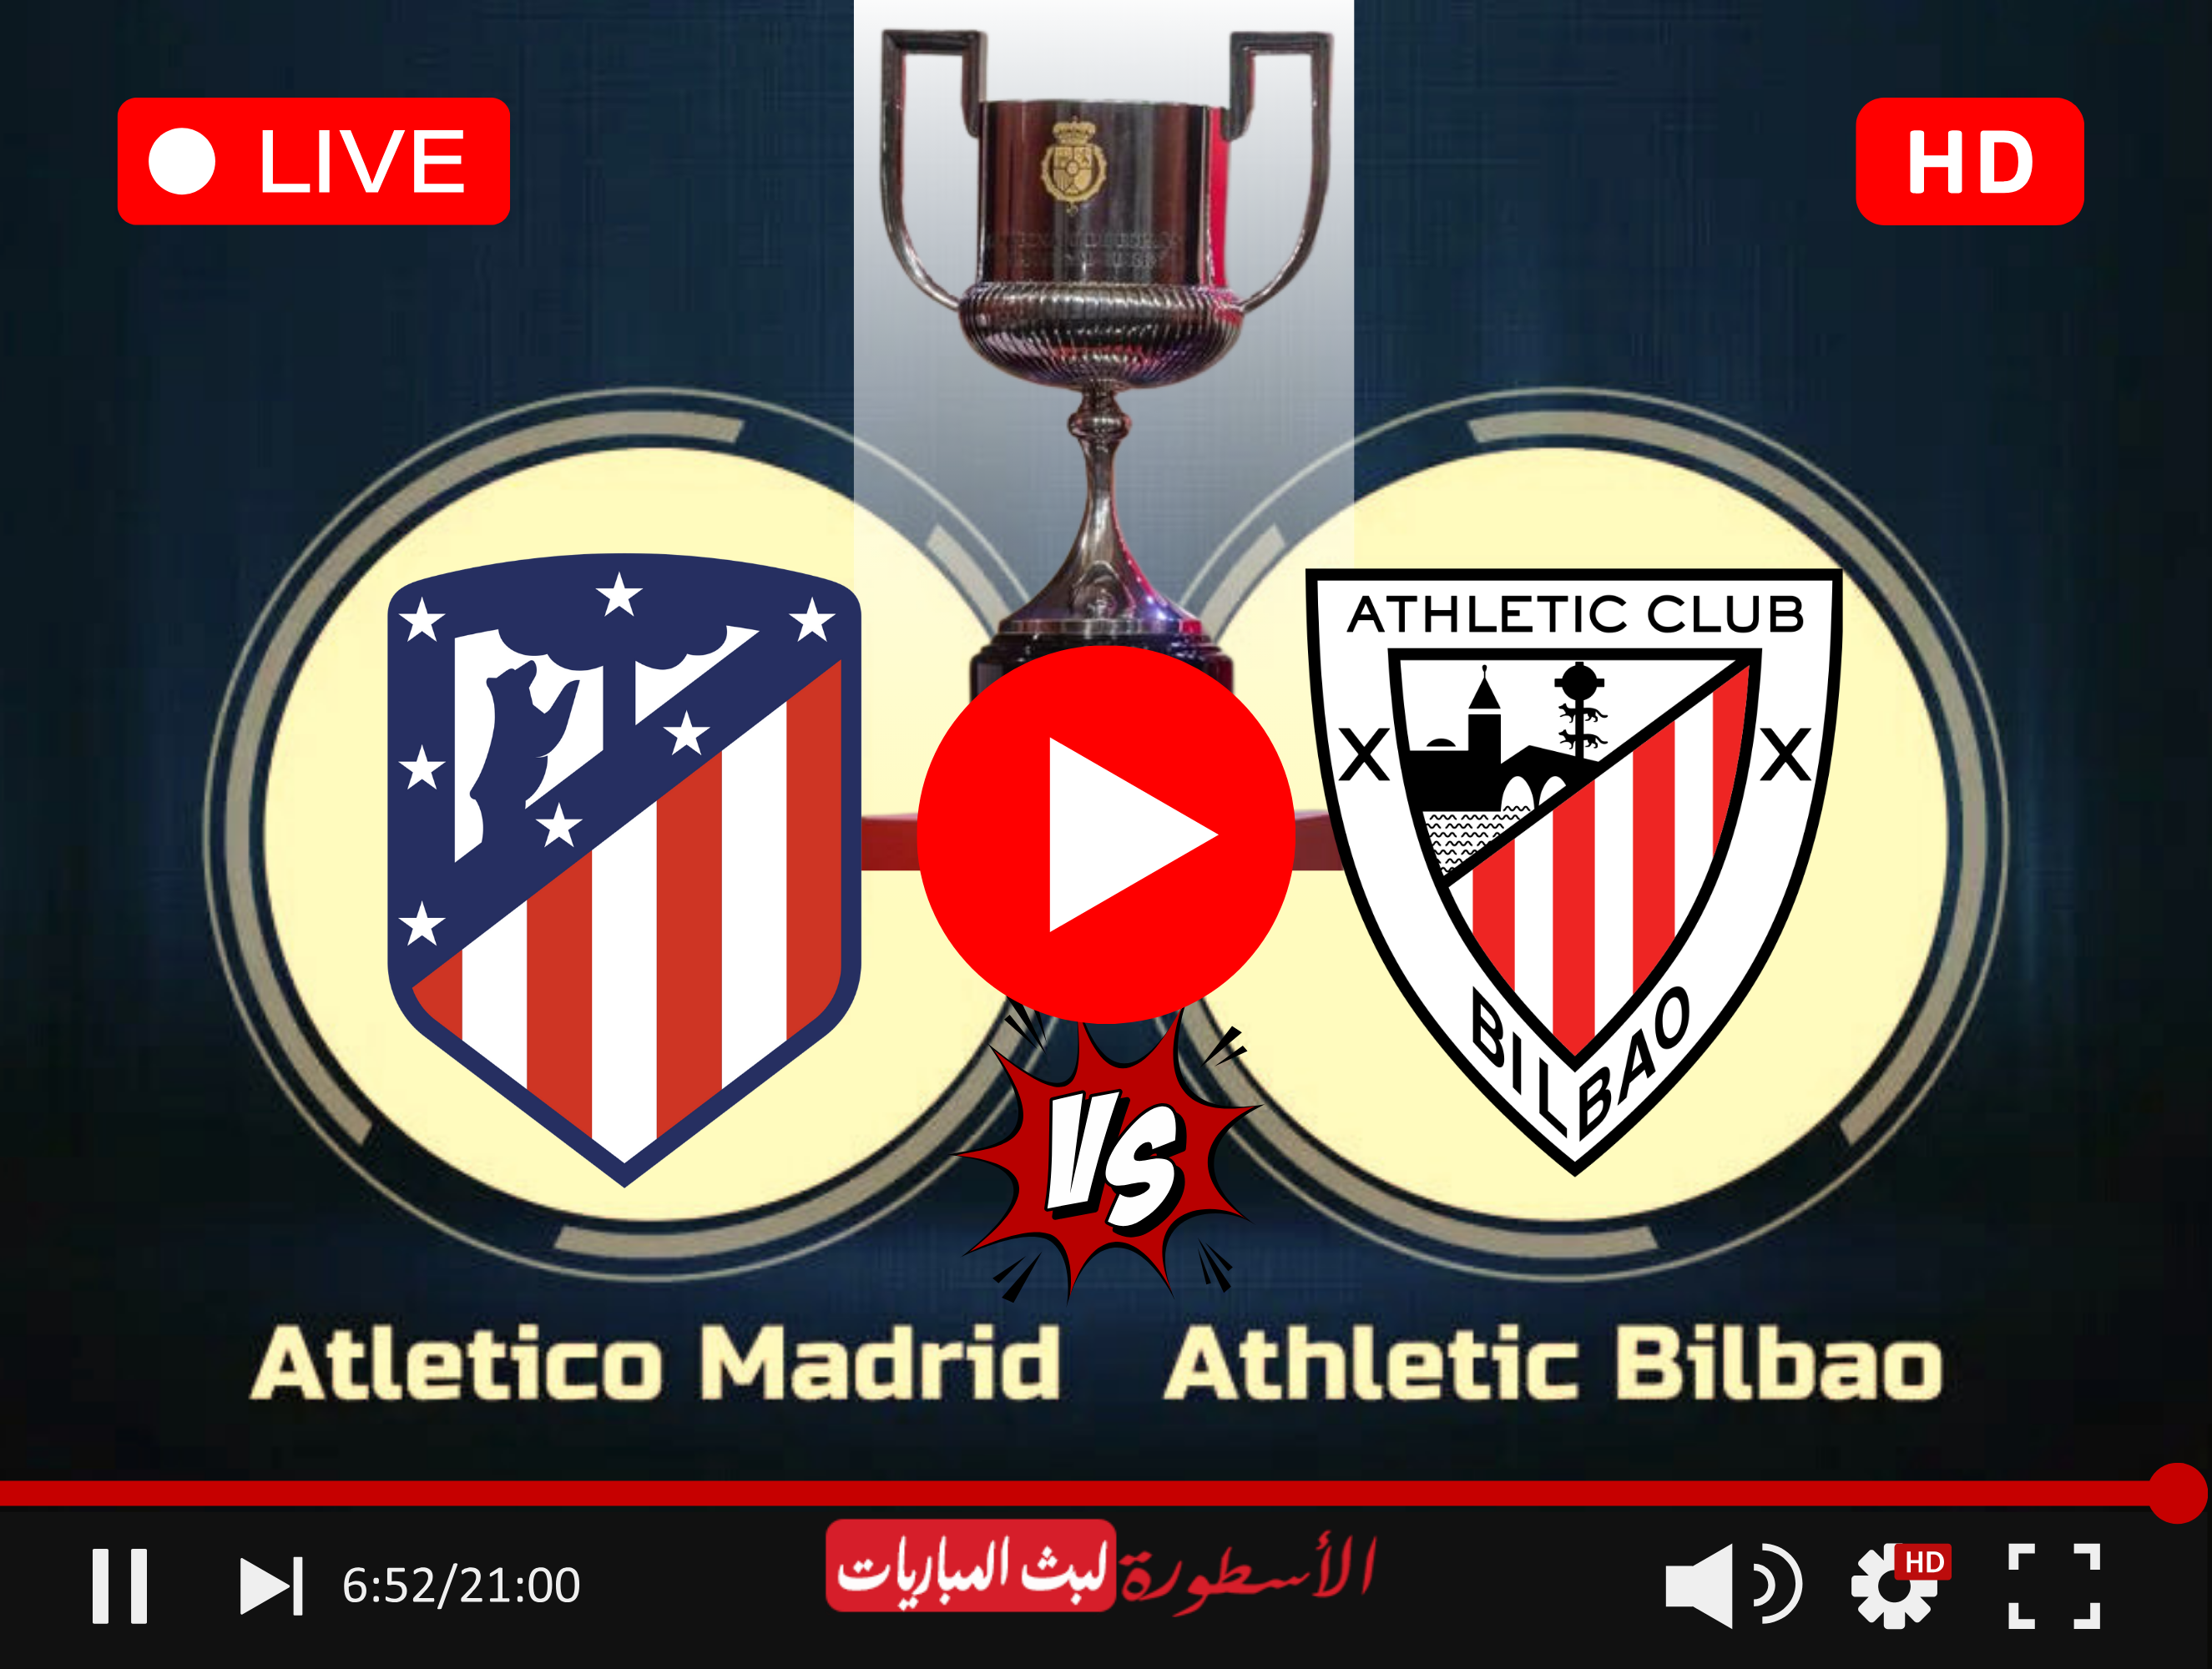 مشاهدة مباراة أتلتيكو مدريد وأتلتيك بلباو بث مباشر